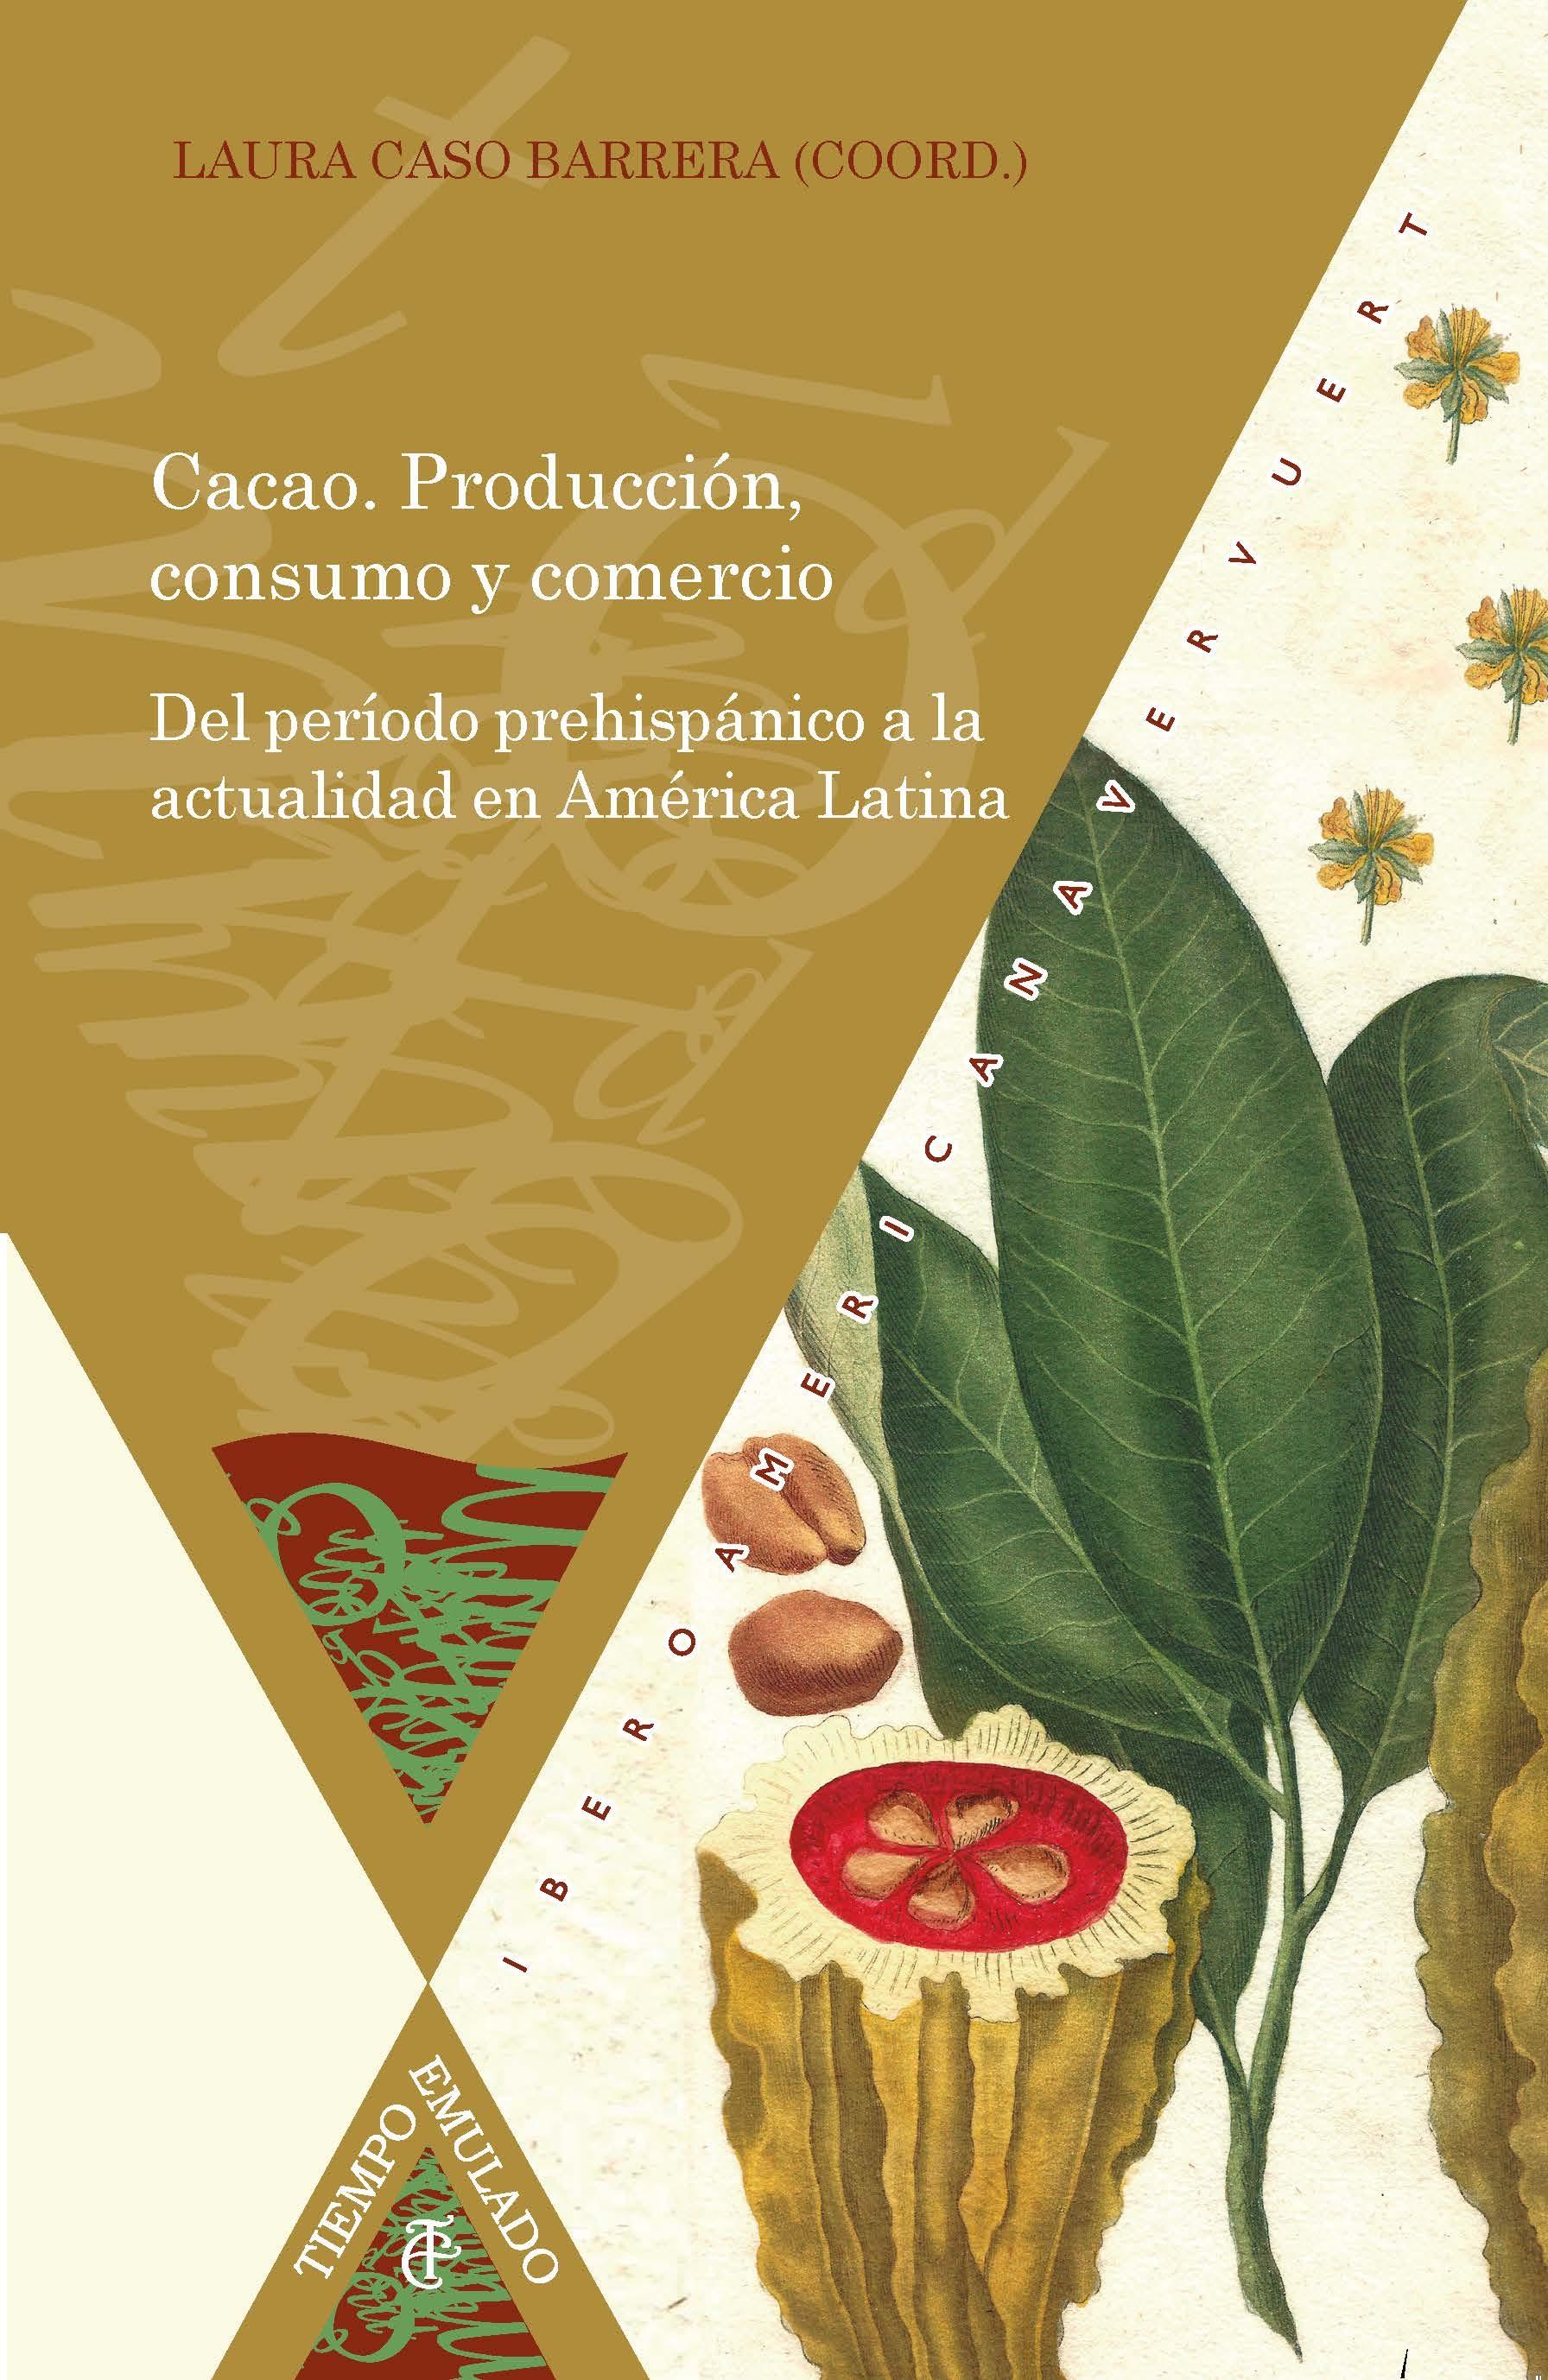 Cacao. Producción, consumo y comercio " Del período prehispánico a la actualidad en América Latina"